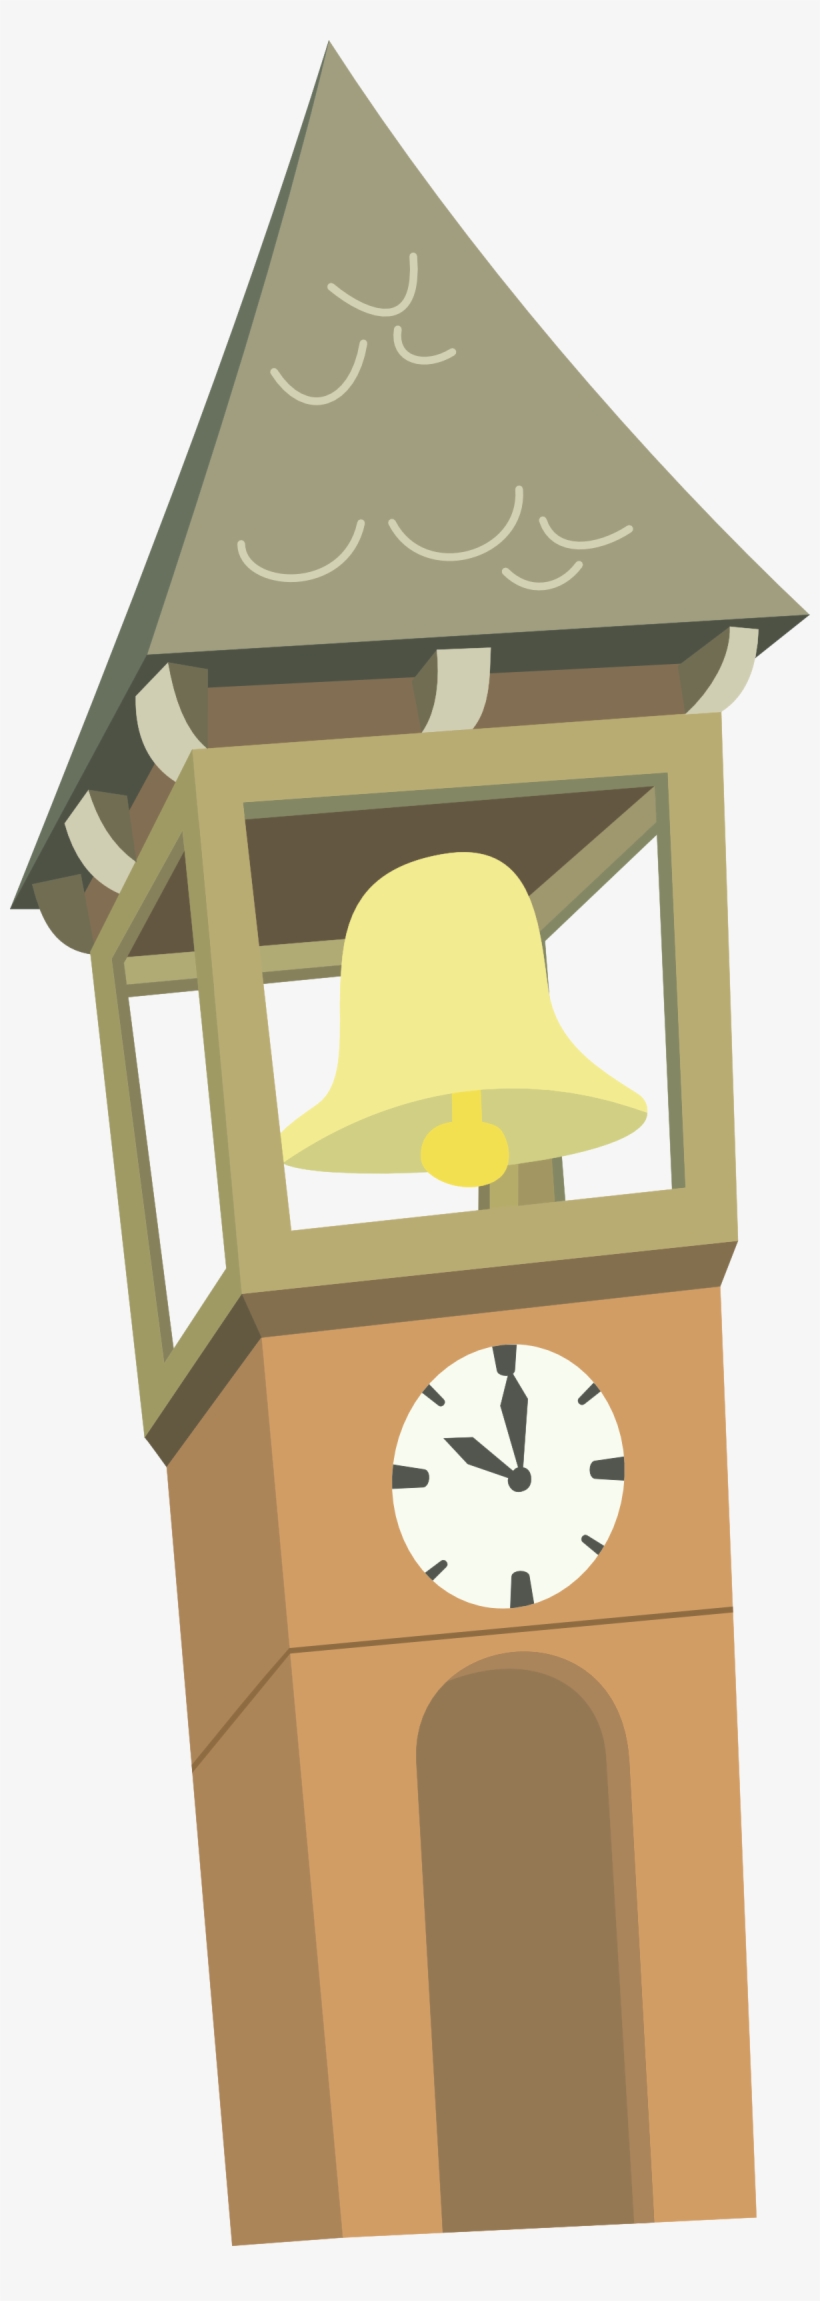 Images Of Big Ben Clock Cartoon Spacehero Ⓒ - Clock Tower Cartoon Png, transparent png #8183683